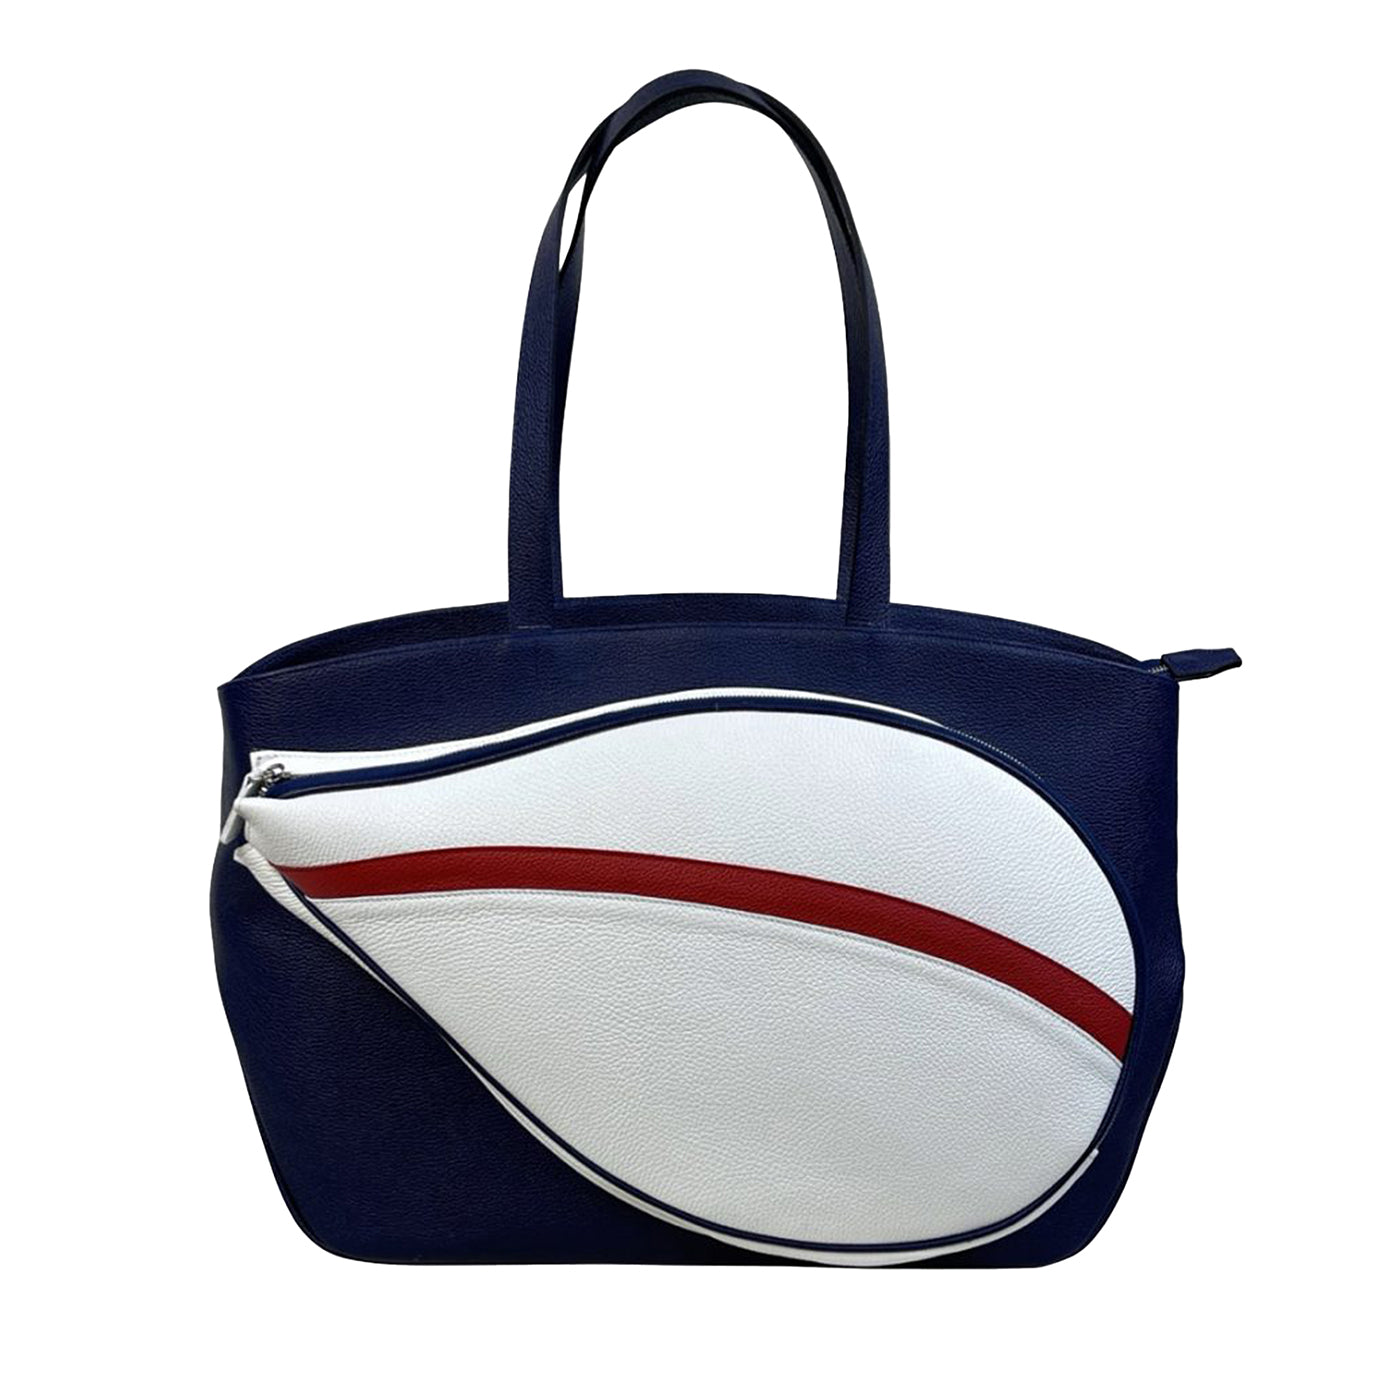 Sporttasche in Blau/Rot/Weiß mit Tasche in Form eines Tennisschlägers - Hauptansicht